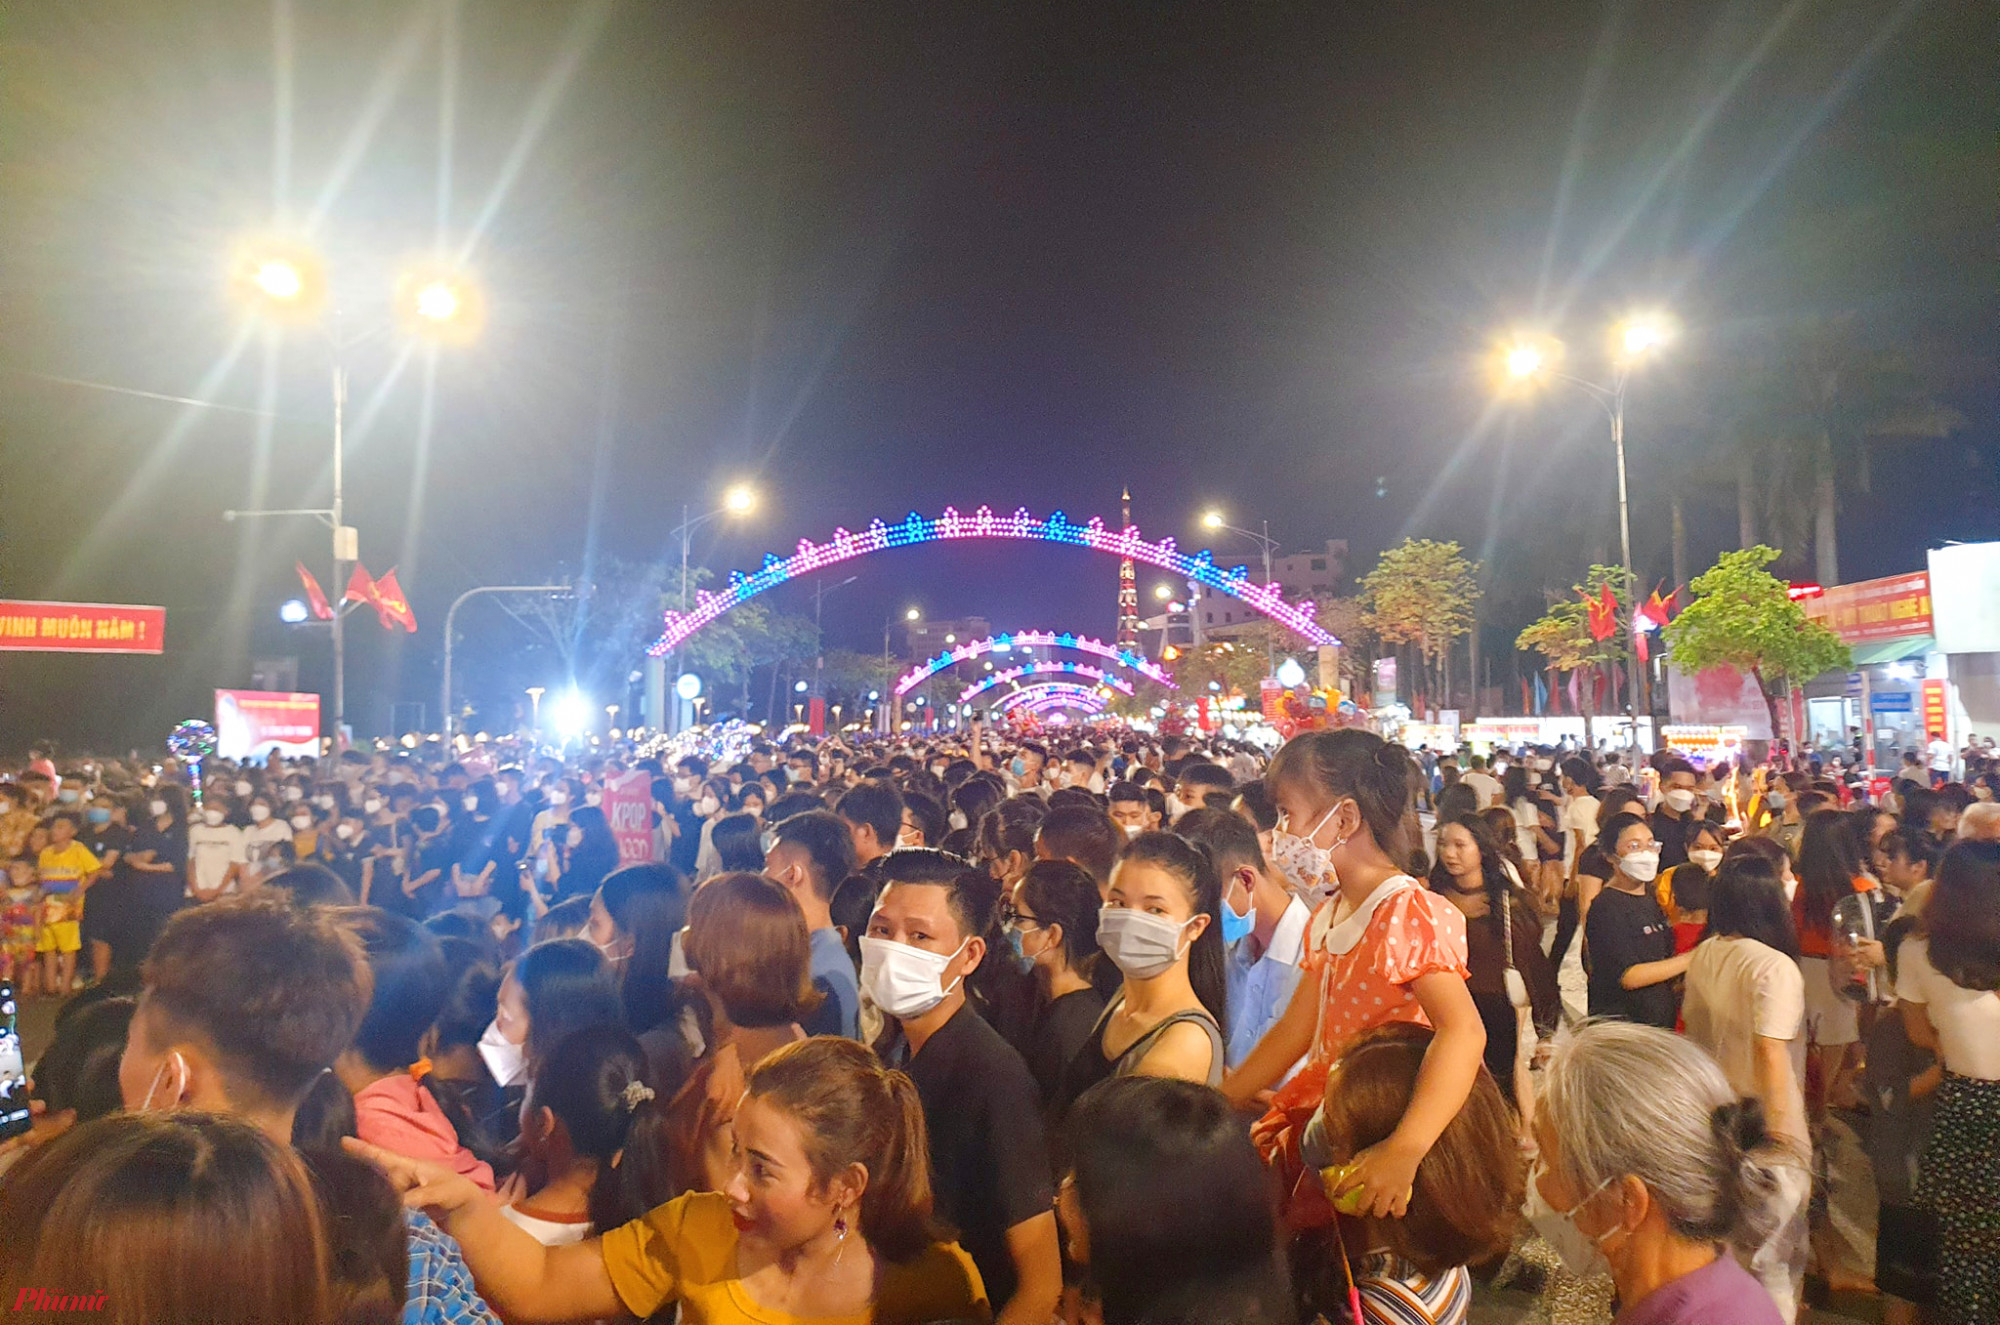 Phố đi bộ lần đầu tiên xuất hiện tại Nghệ An đã thu hút rất đông người đổ về để trải nghiệm, vui chơi. Theo thống kê của UBND thành phố Vinh, trung bình mỗi đêm có hàng ngàn người đổ về phố đi bộ. Riêng trong 2 đêm đầu tiên (8 - 9/4) đã có khoảng 2 vạn người tham gia phố đi bộ. 